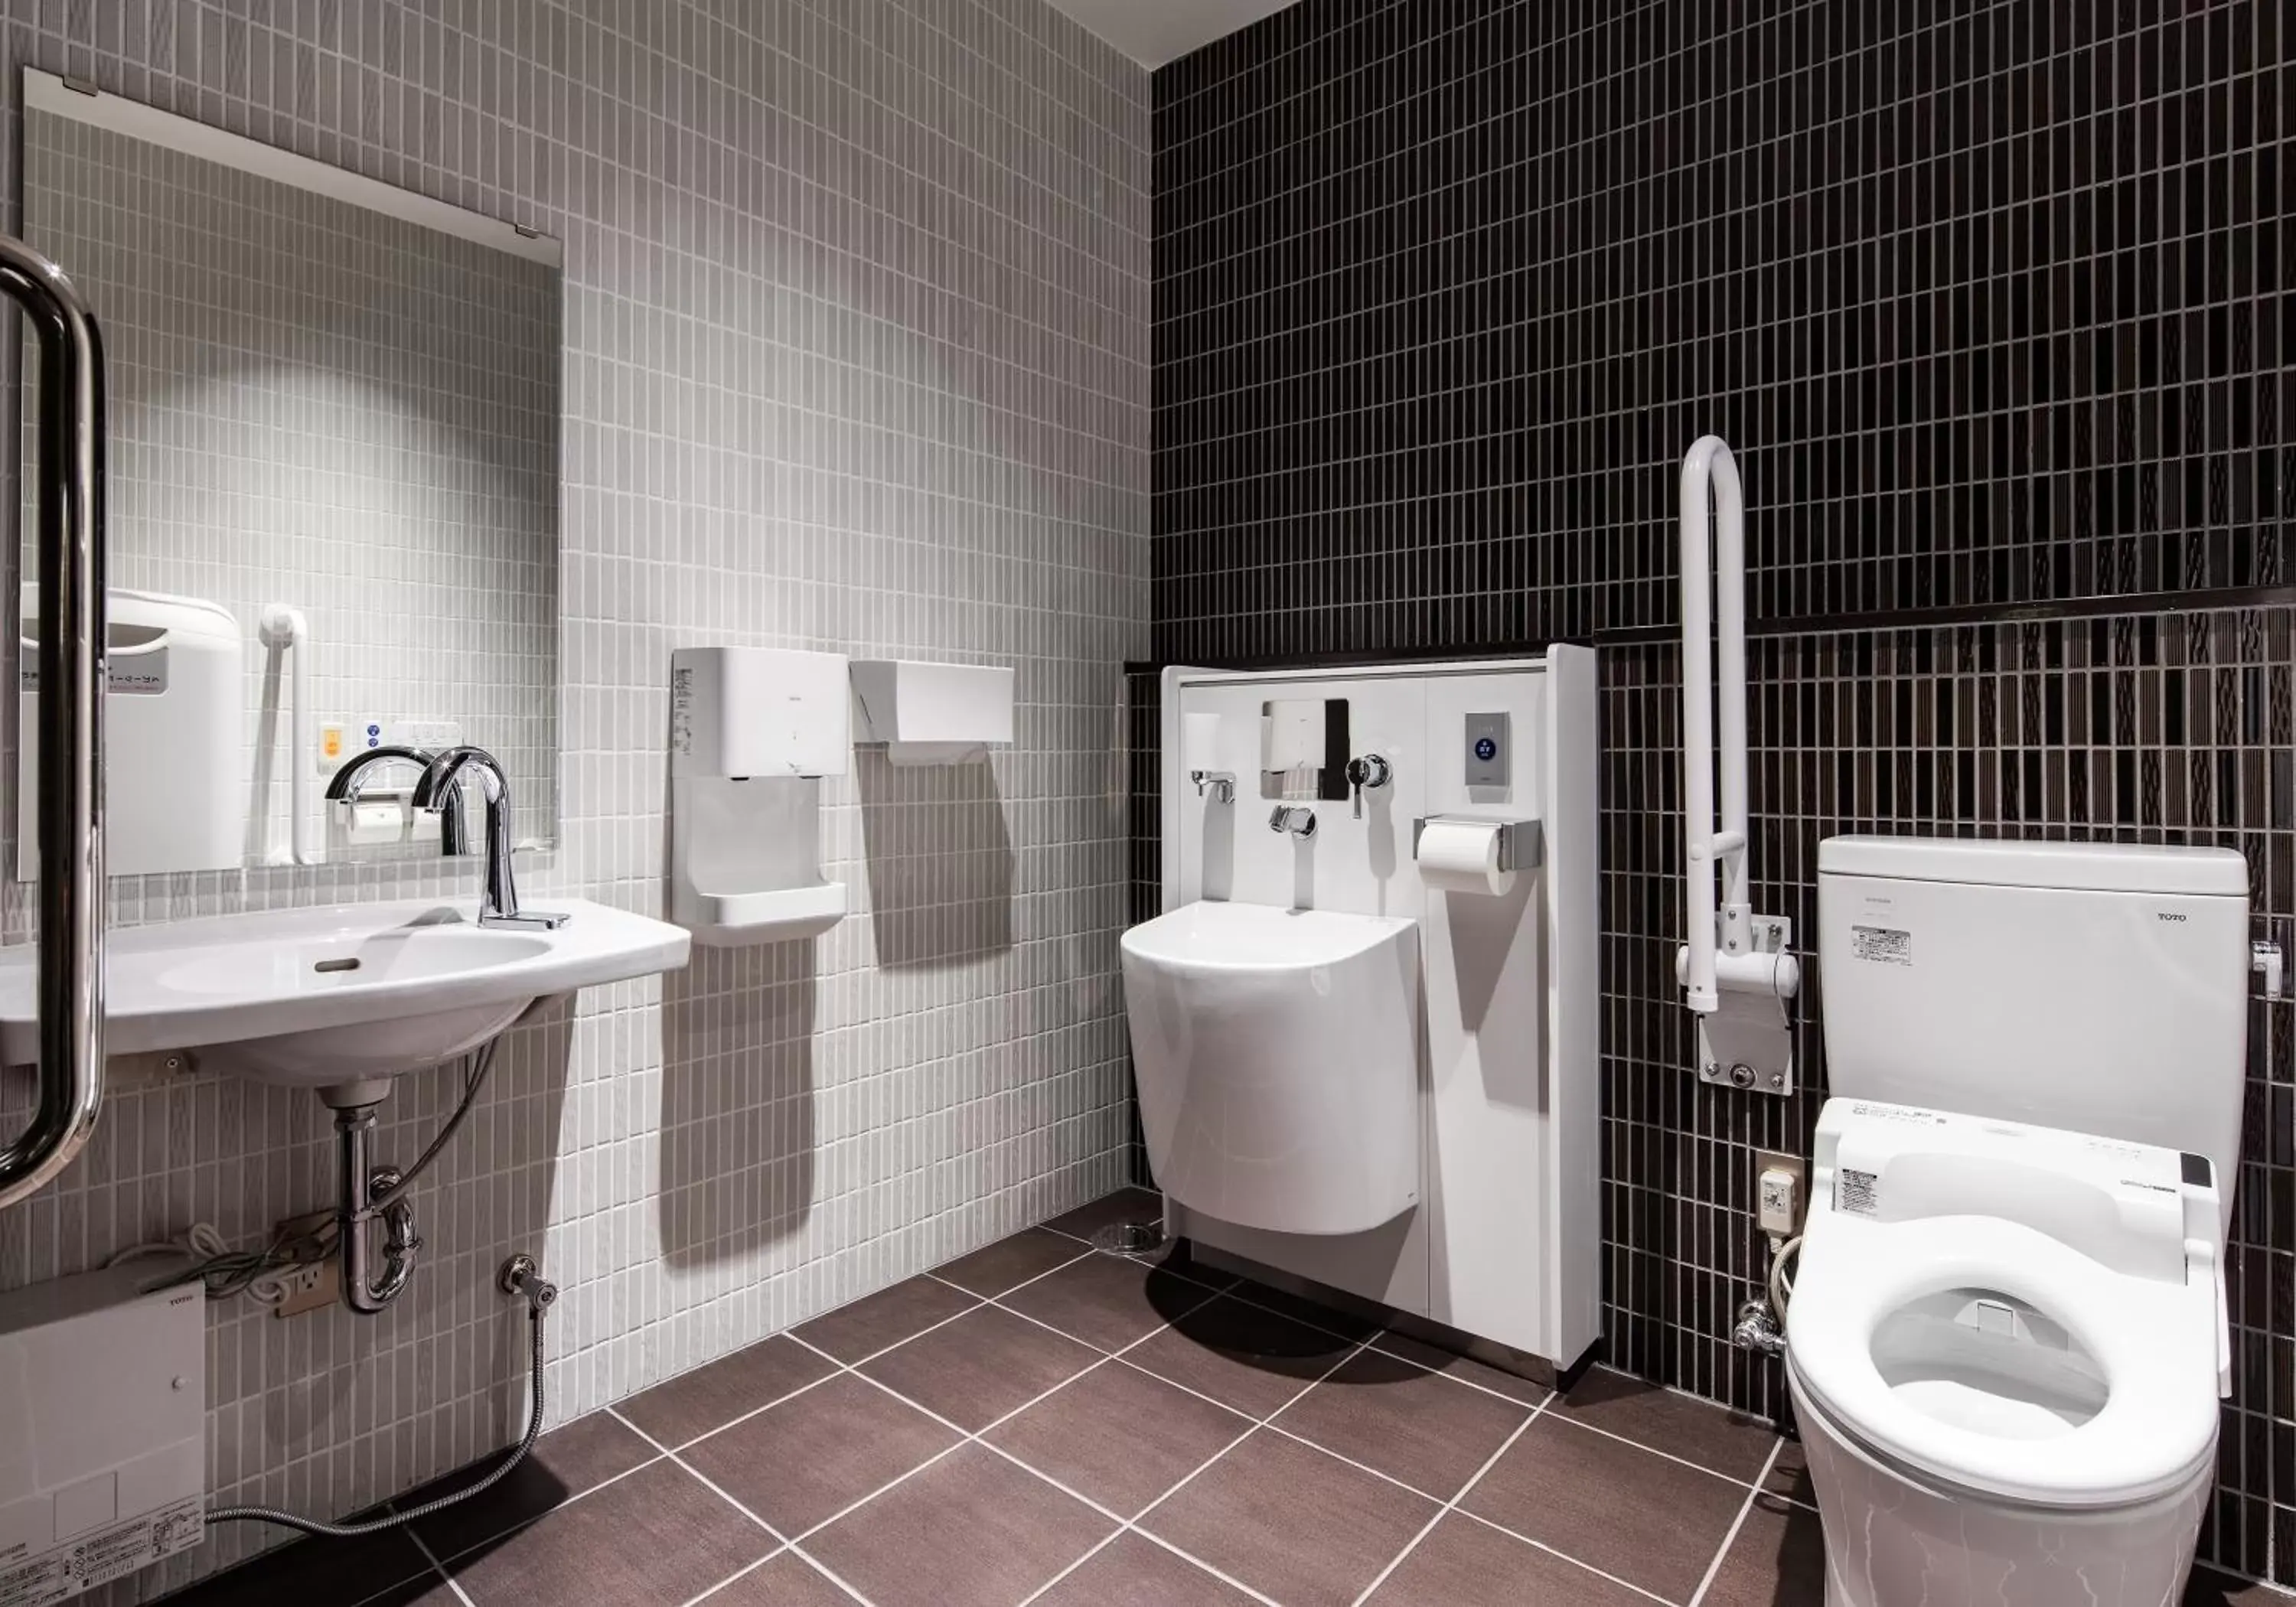 Area and facilities, Bathroom in Daiwa Roynet Hotel Nagoya Taiko dori Side